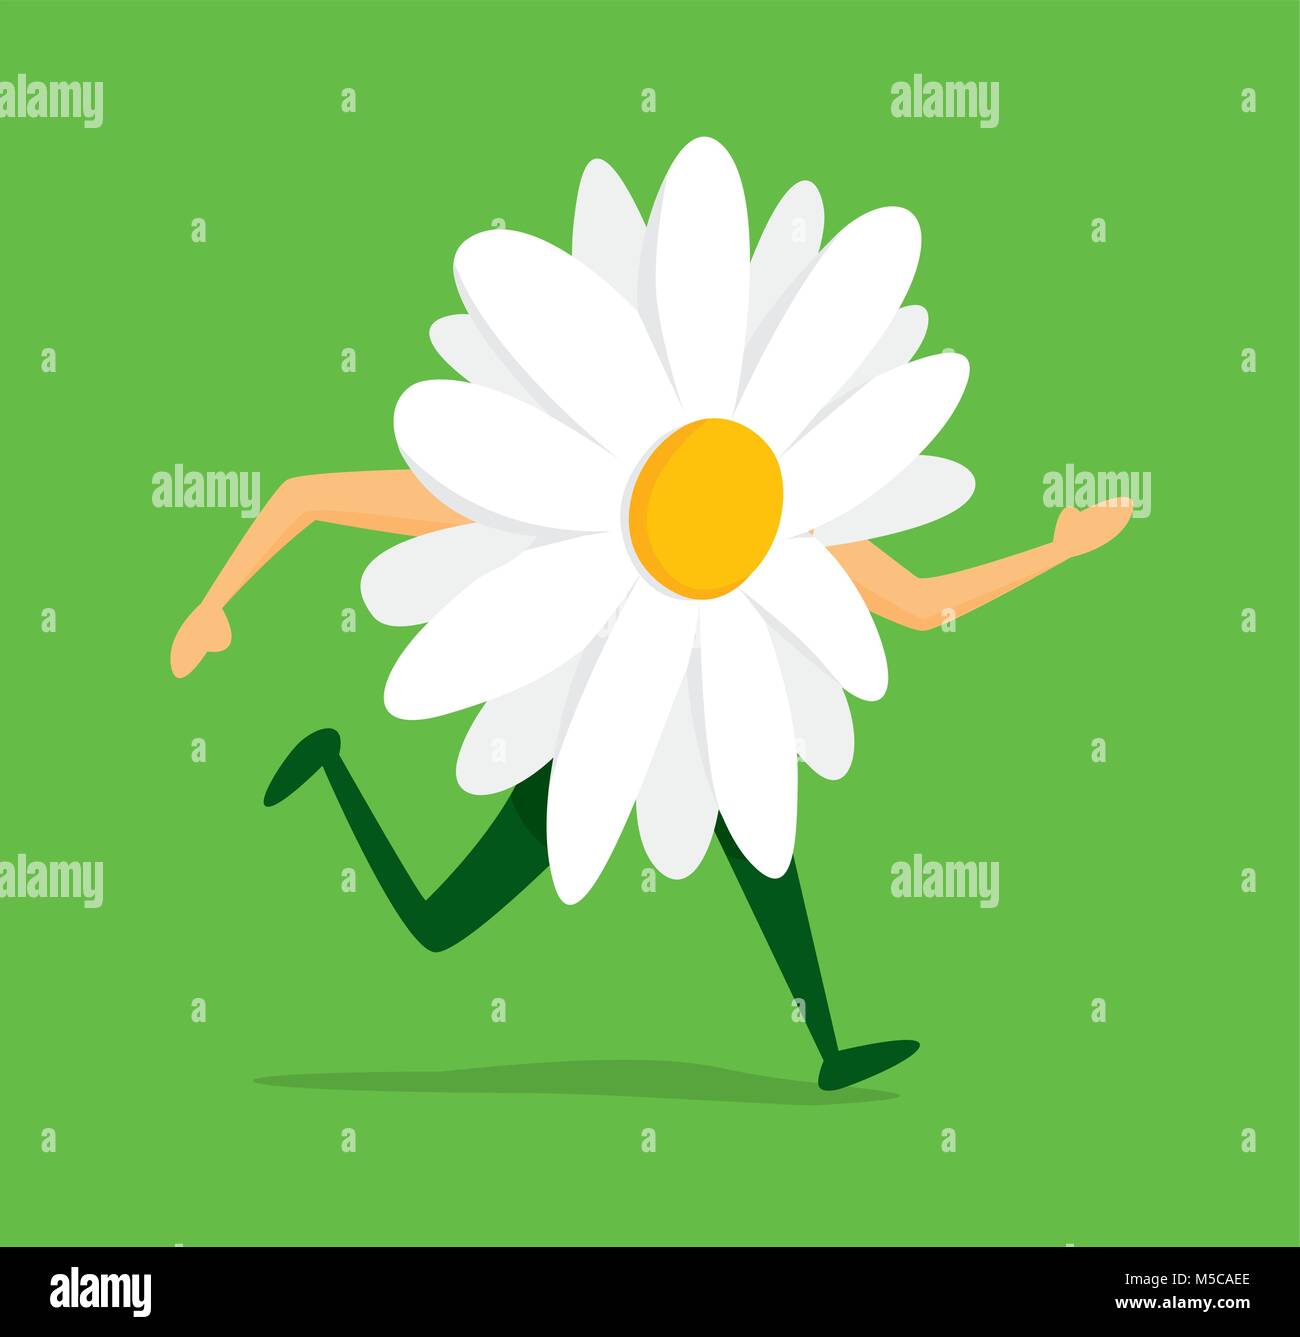 Ilustración de dibujos animados de daisy flor en el run Ilustración del Vector